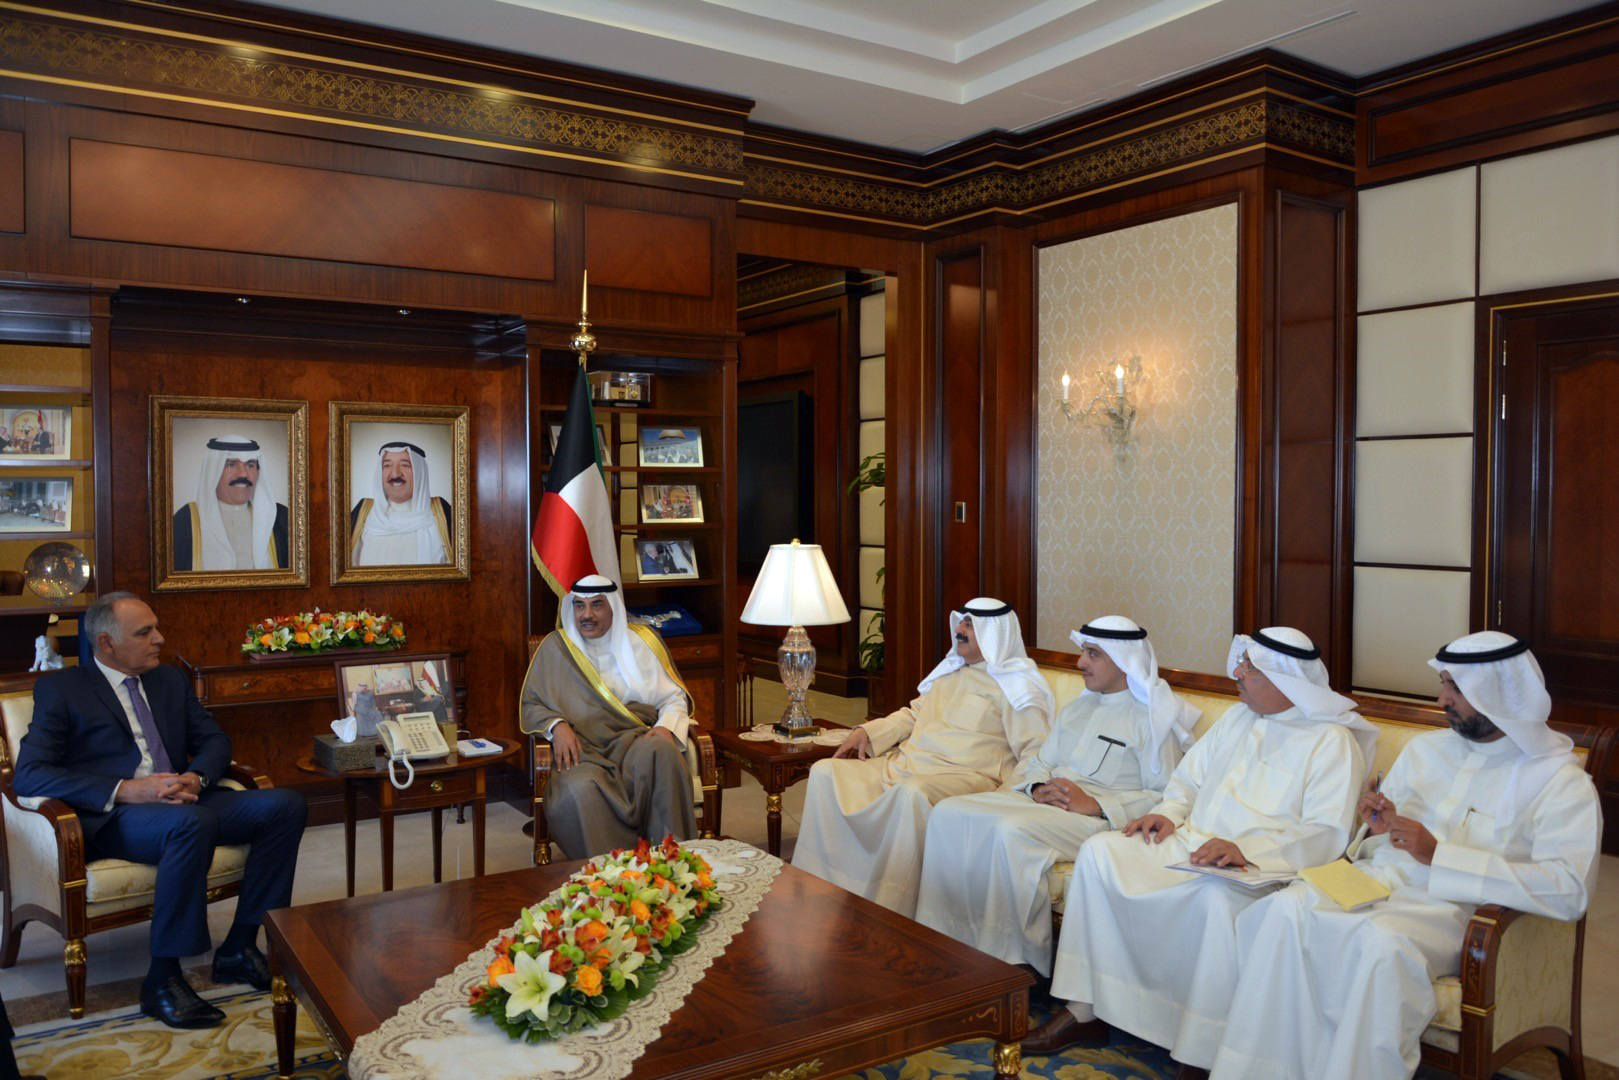 Acting Prime Minister and Foreign Minister Sheikh Sabah Al-Khaled Al-Hamad Al-Sabah received Moroccan Foreign Minister Salaheddine Mezouar